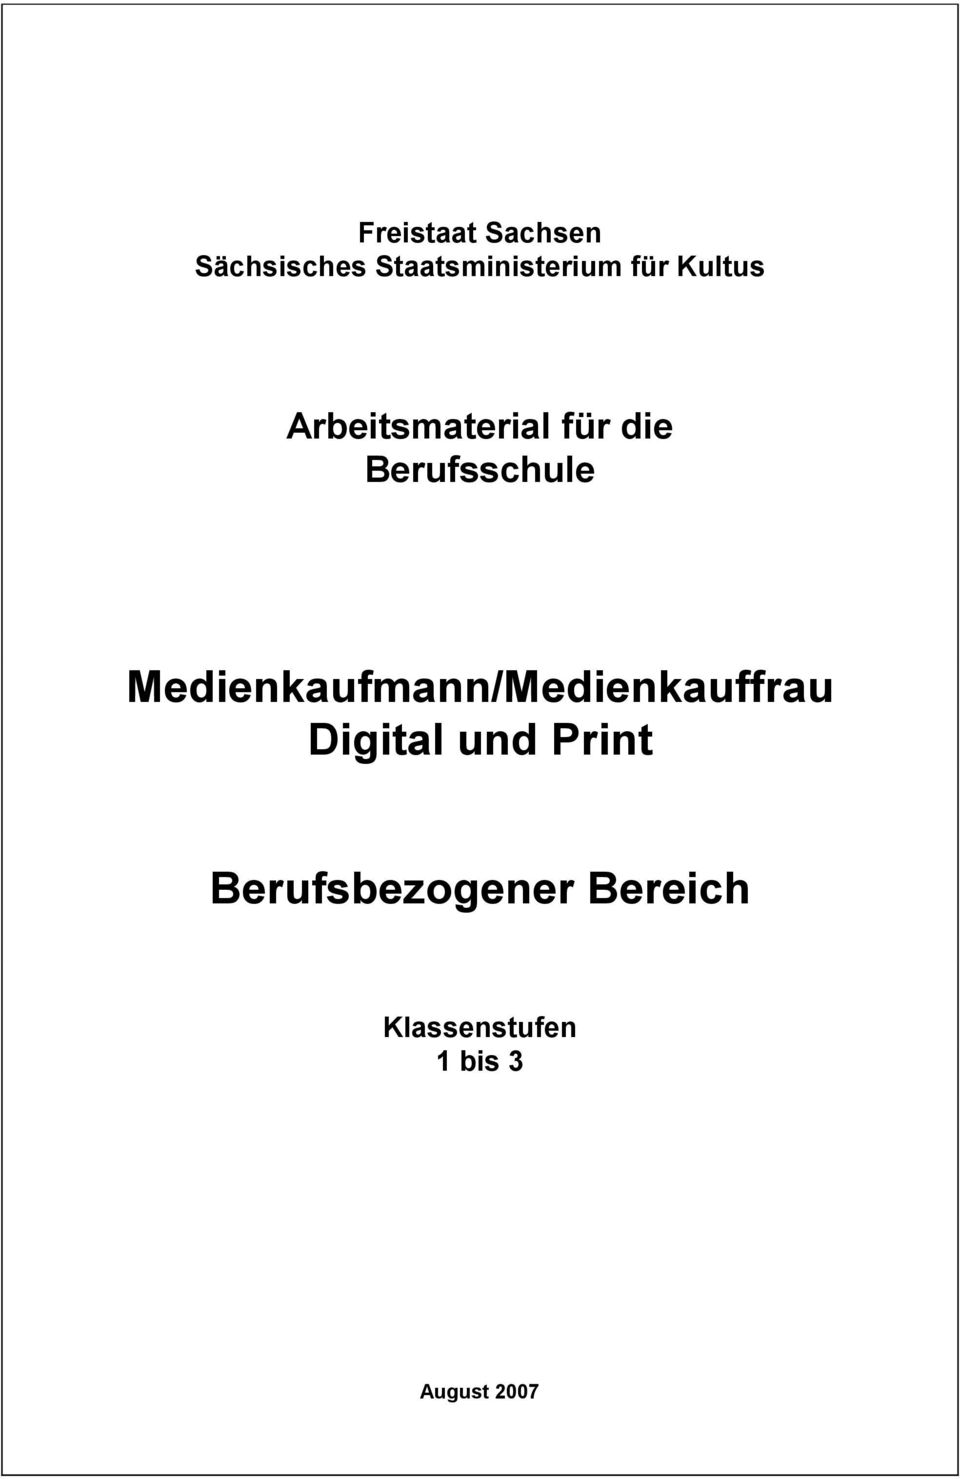 Medienkaufmann/Medienkauffrau Digital und Print